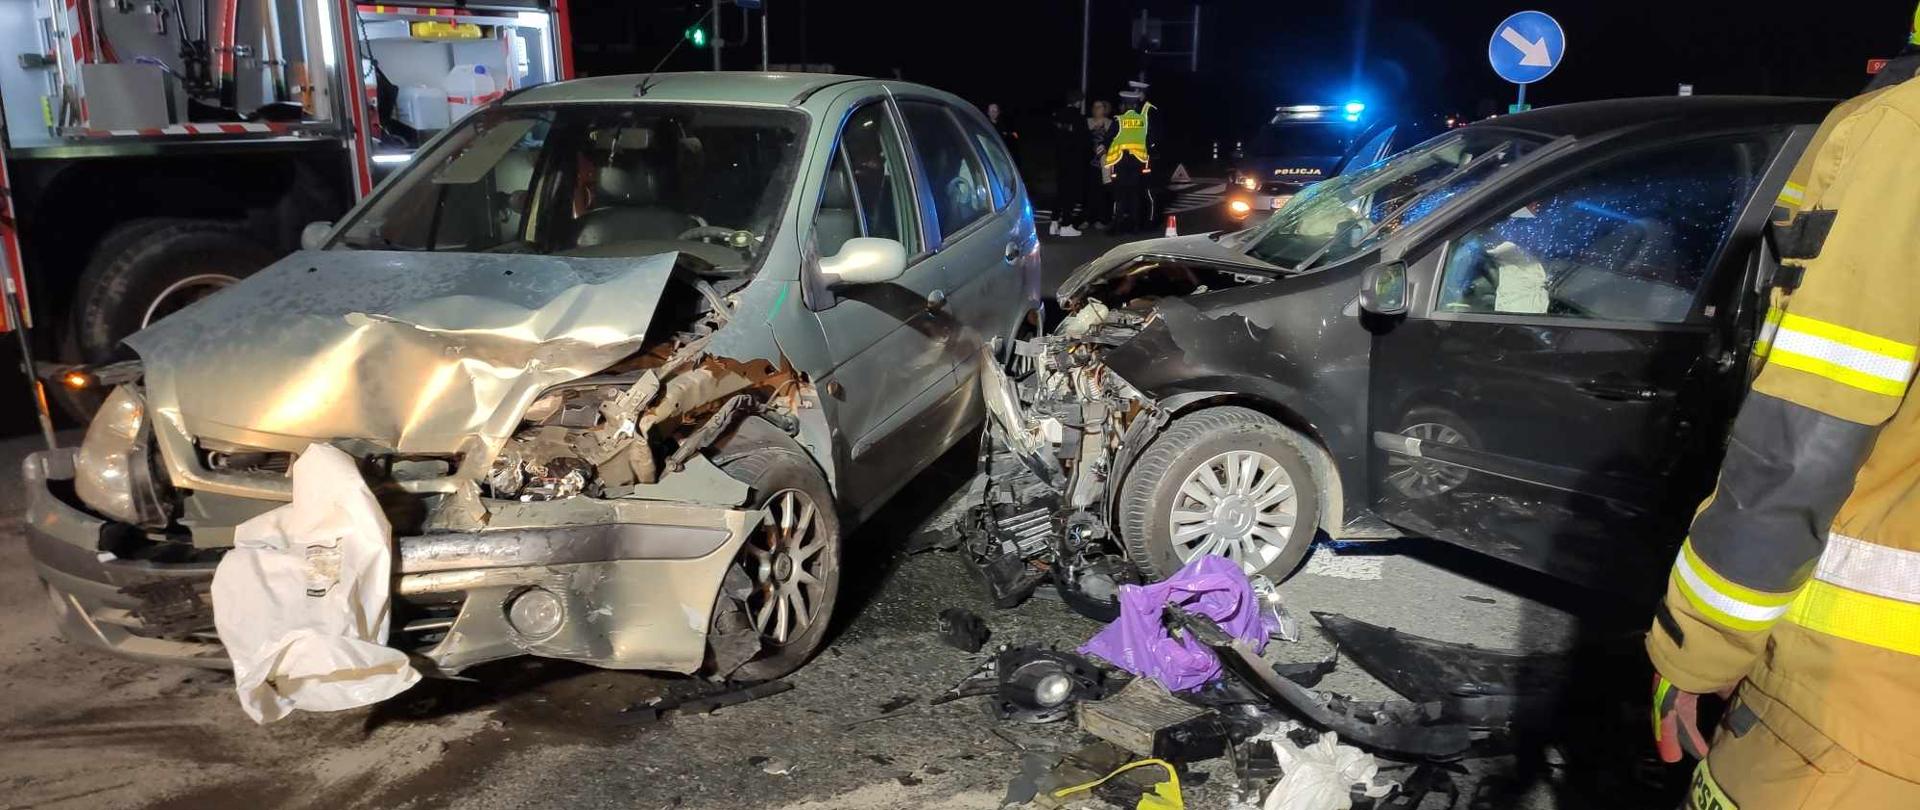 Na zdjęciu widoczne dwa samochody osobowe po zderzeniu z licznymi uszkodzeniami karoserii